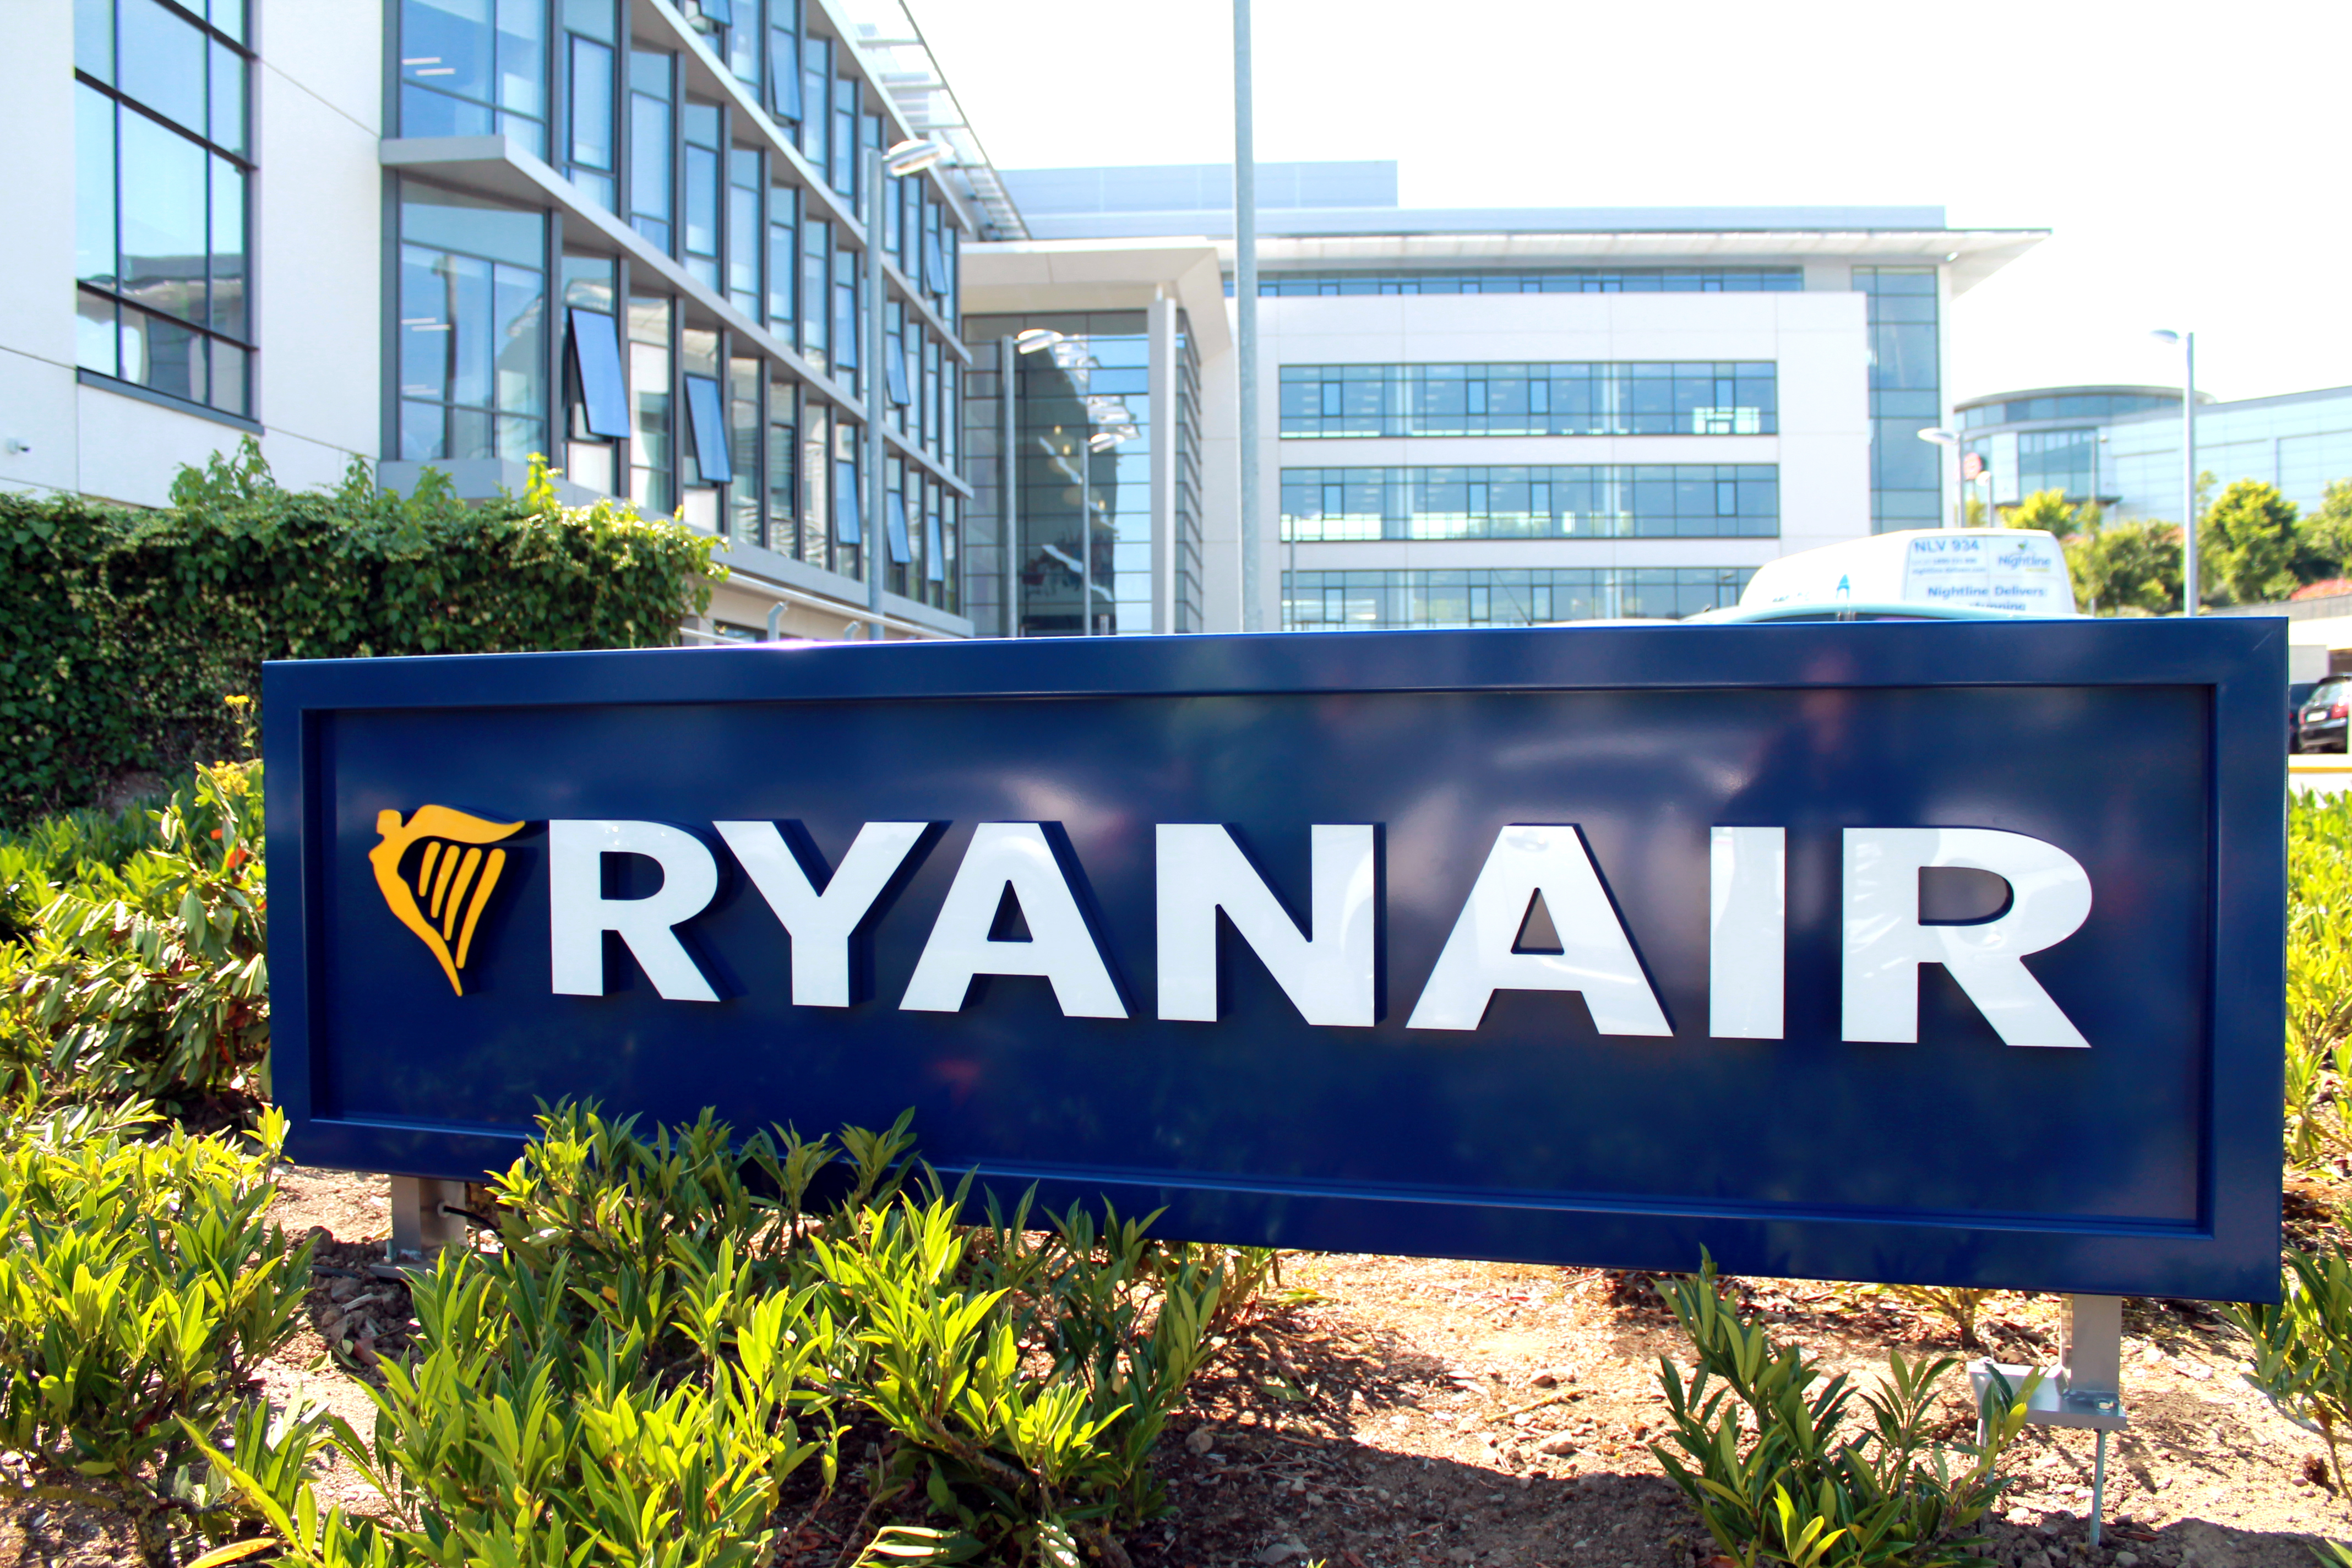 Ryanair Z Zadowoleniem Przyjmuje Orzeczenie Irlandzkiego Sądu  Sąd Orzeka, Iż W Przypadku Strajków Wewnętrznych, Rekompensaty Z Tytułu Eu261 Nie Mają Zastosowania